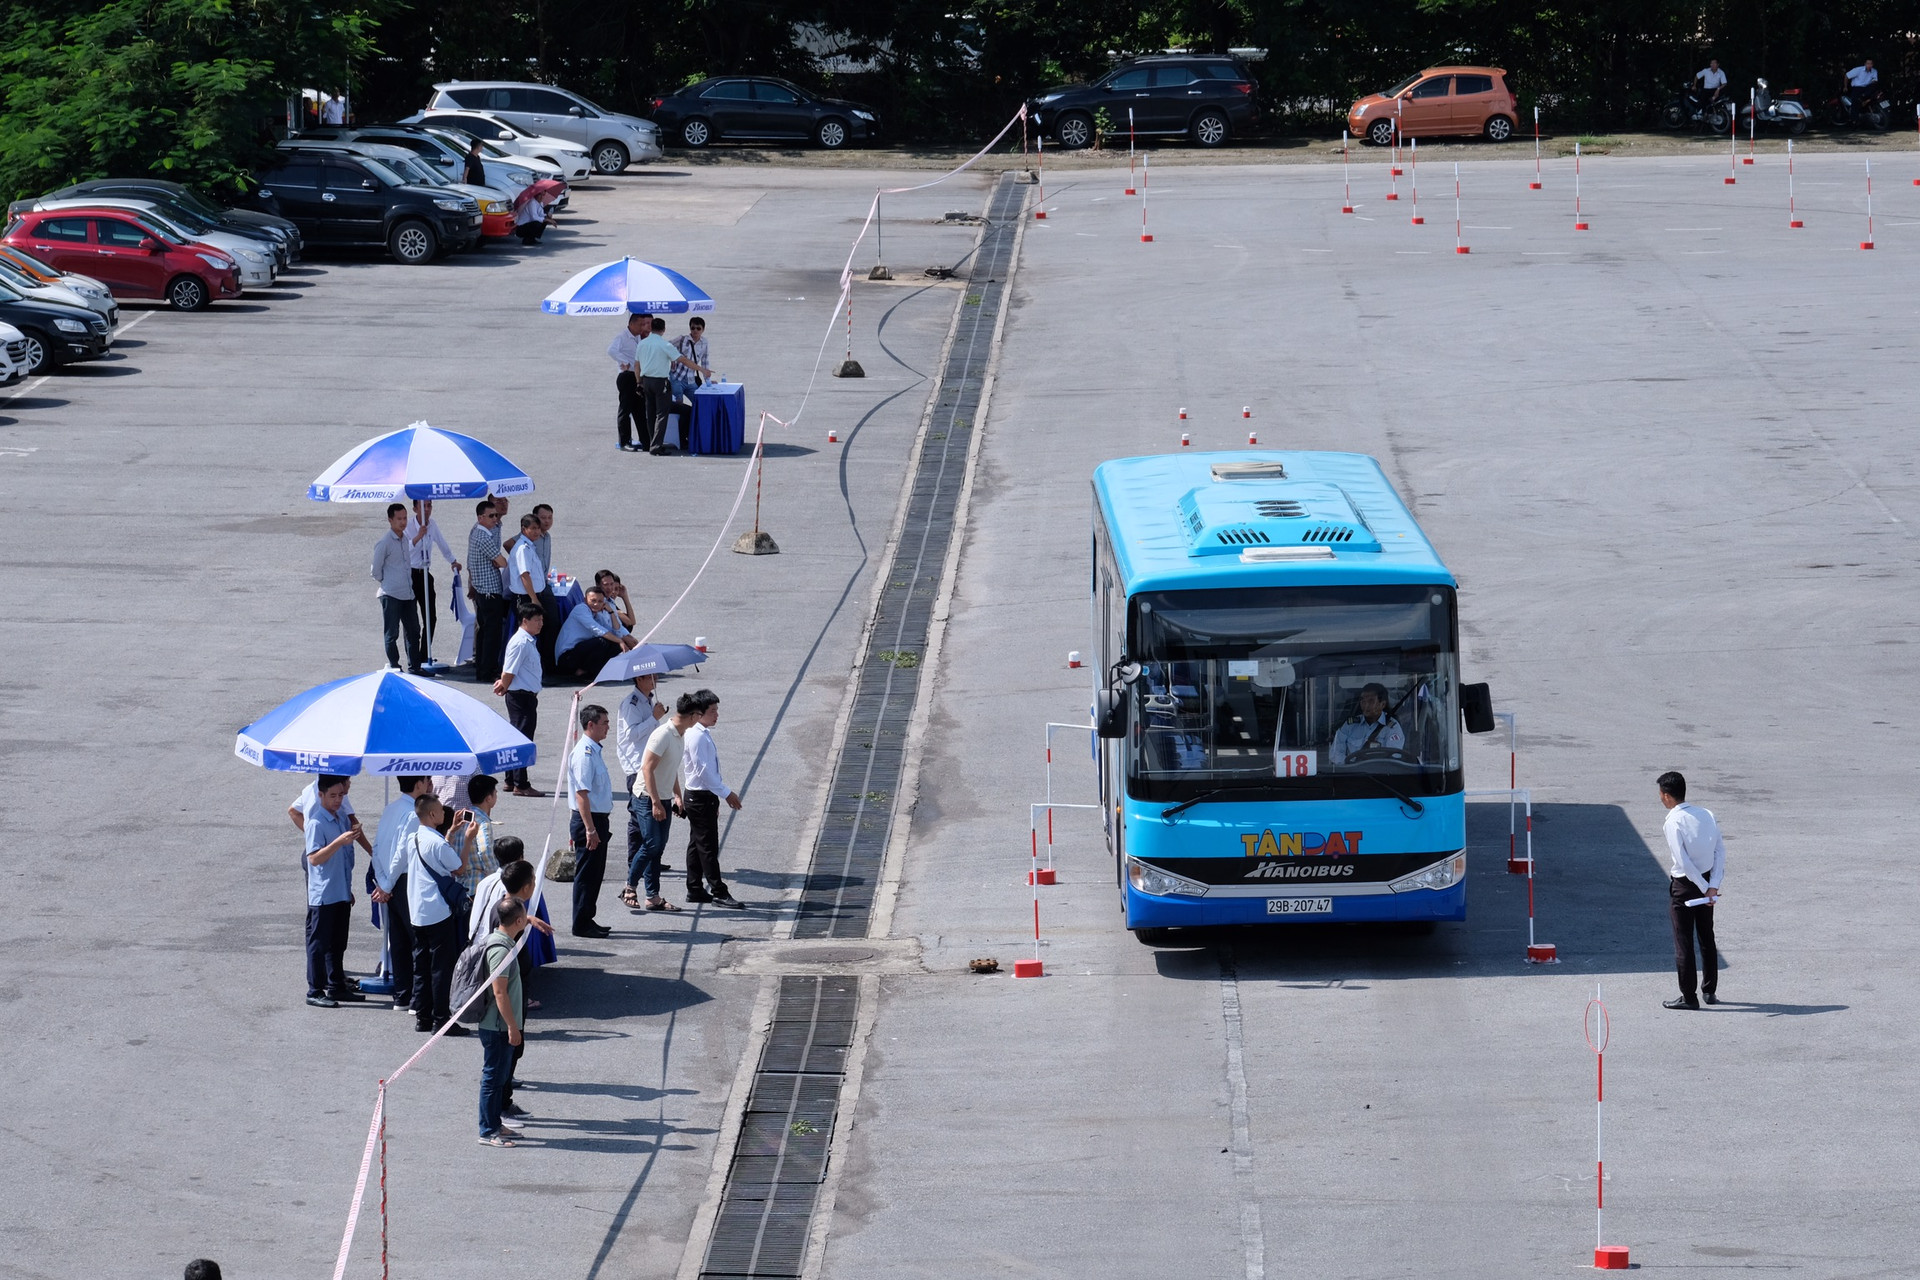 Tổng công ty vận tải Hà Nội (Transerco) tổ chức Hội thi lái xe giỏi, an toàn năm 2020.